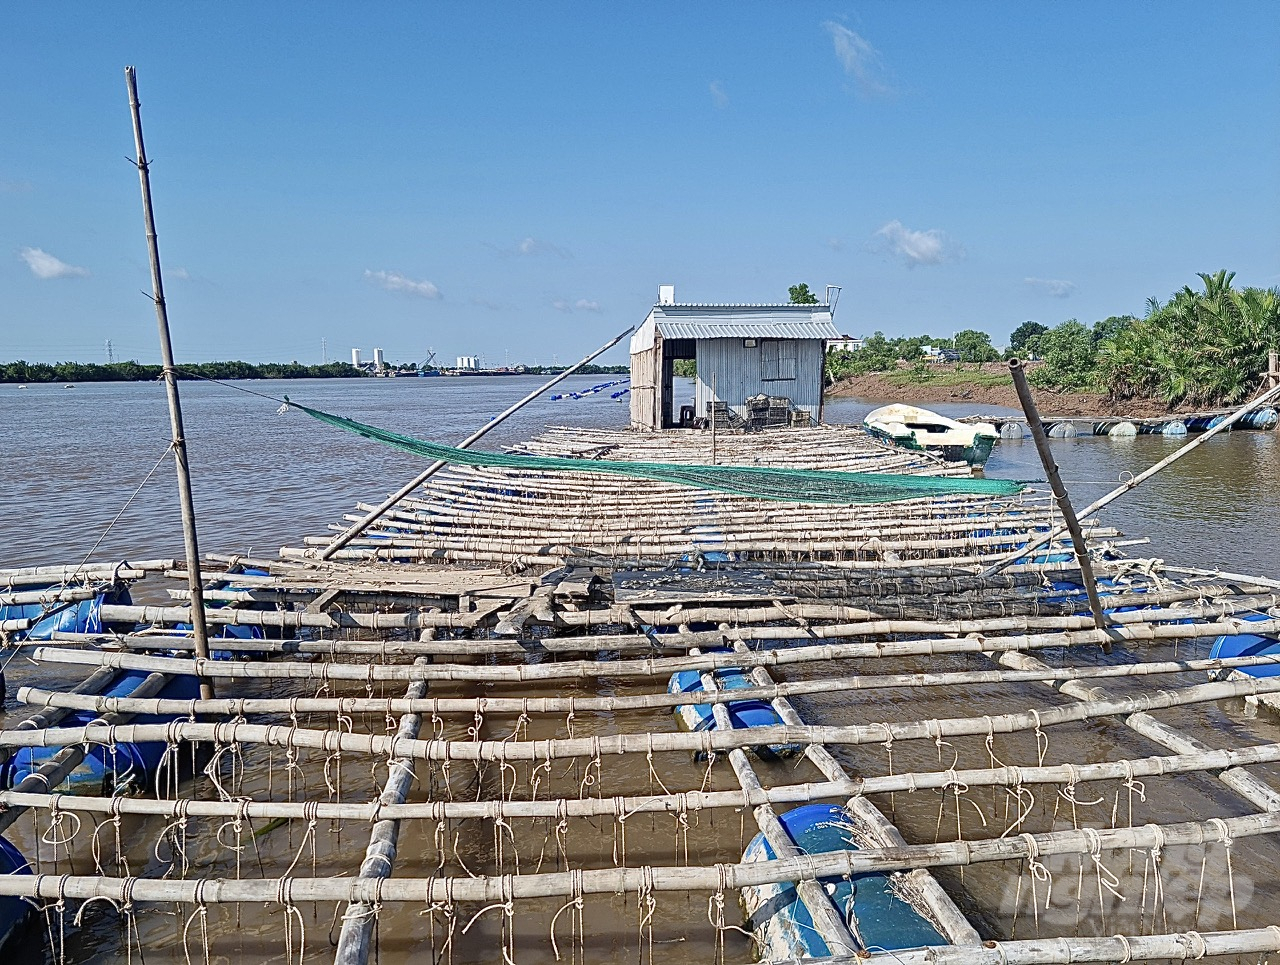  Các lồng bè nuôi hàu vô tình làm hẹp dòng sông và ảnh hưởng đến việc lưu thông đường thủy trên đoạn sông dài khoảng 20 km tại địa bàn huyện Duyên Hải. Ảnh: Hồ Thảo.